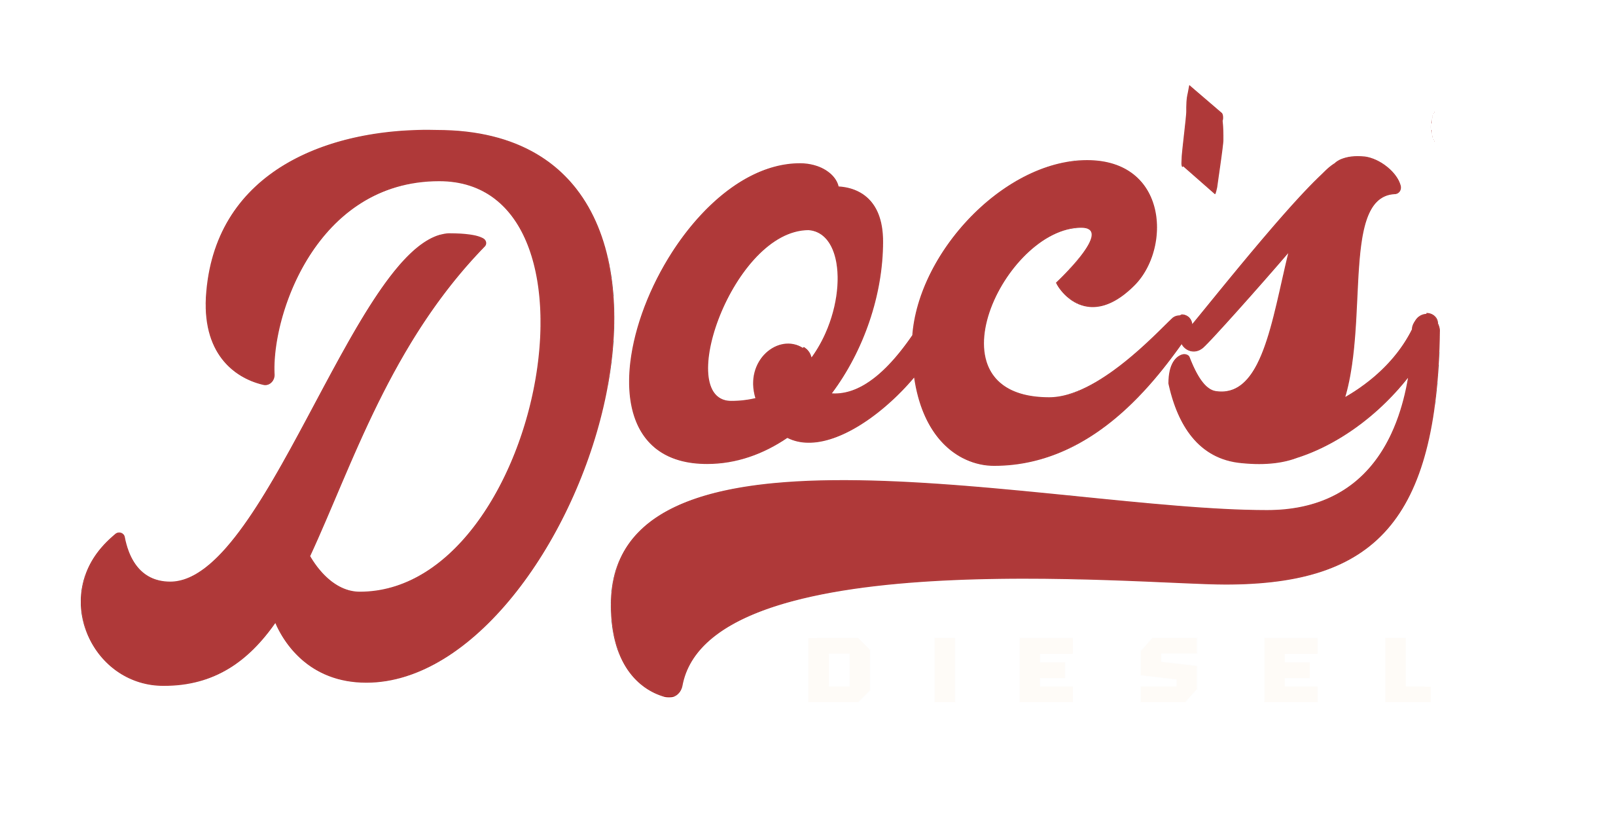 Doc's Diesel logo